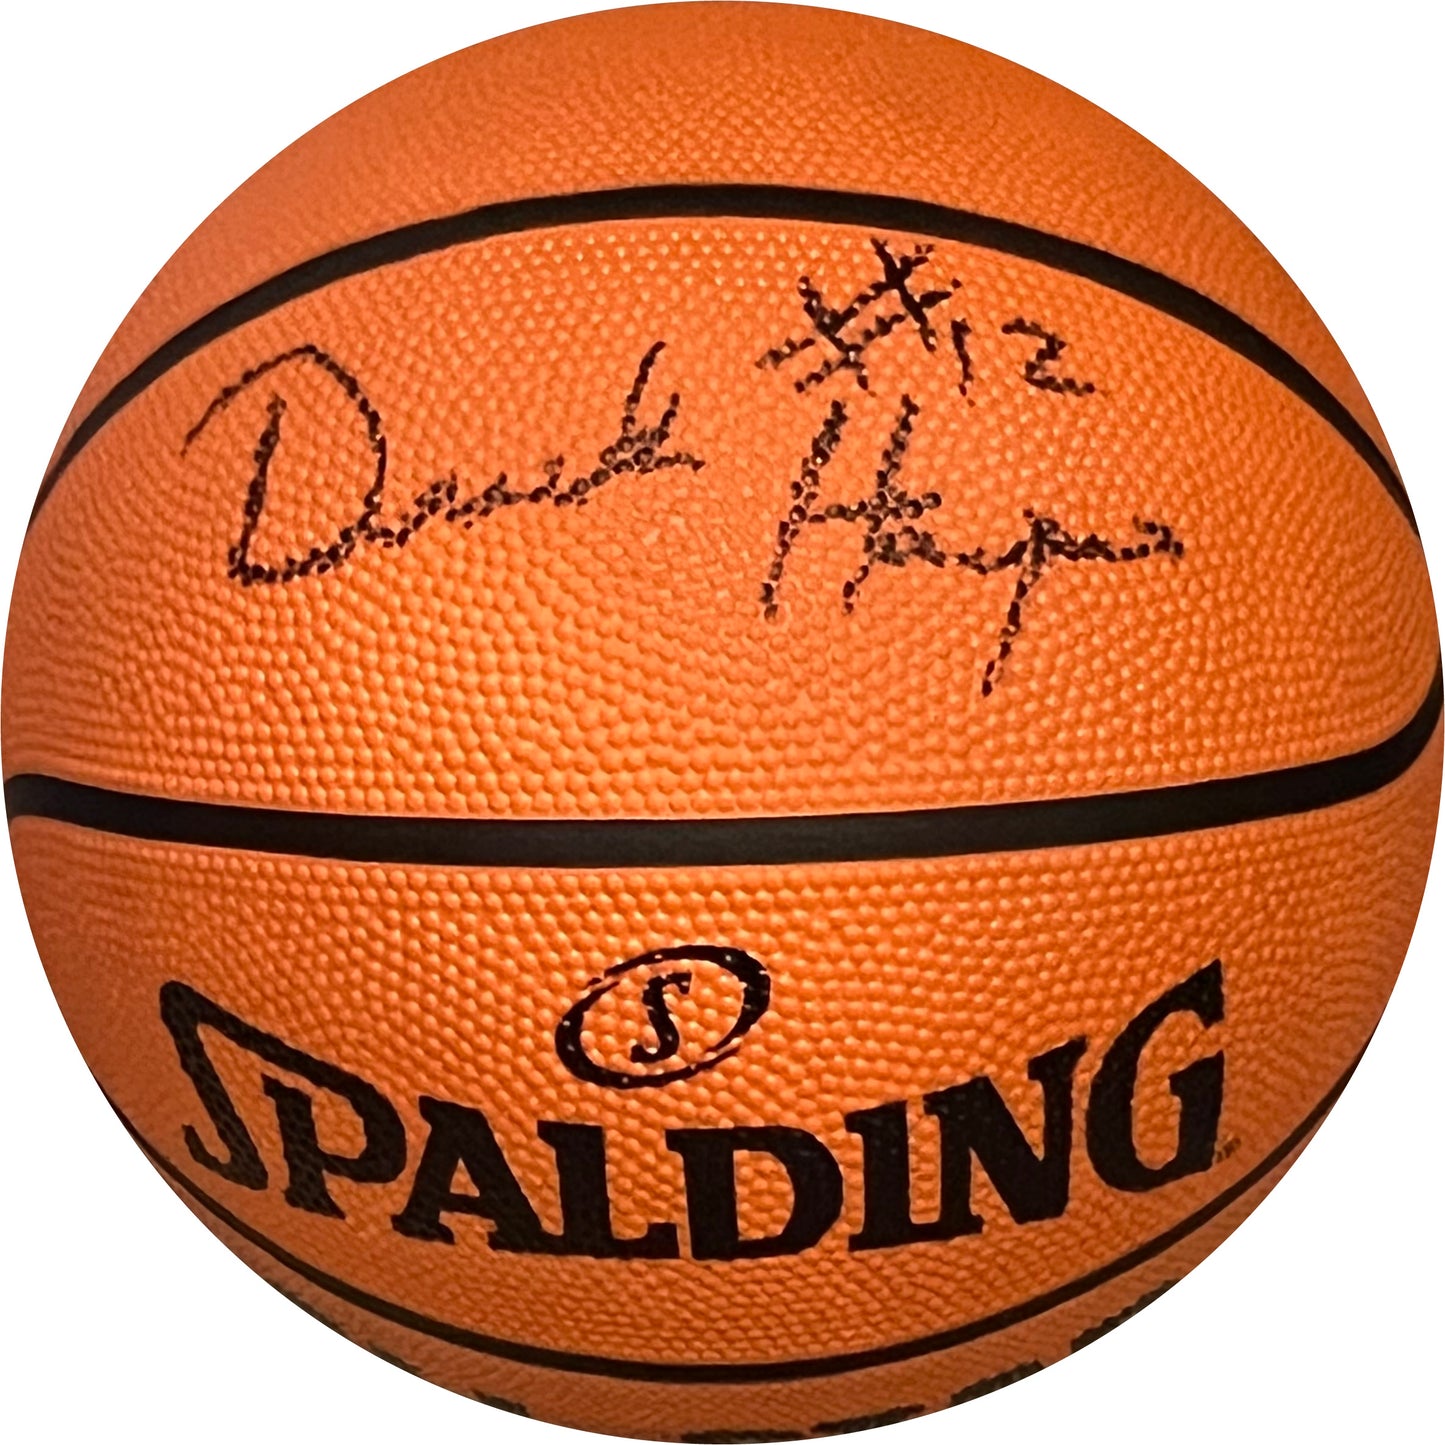 Derek Harper Hand Signed Spalding Basketball Dallas Mavericks Mavs NBA